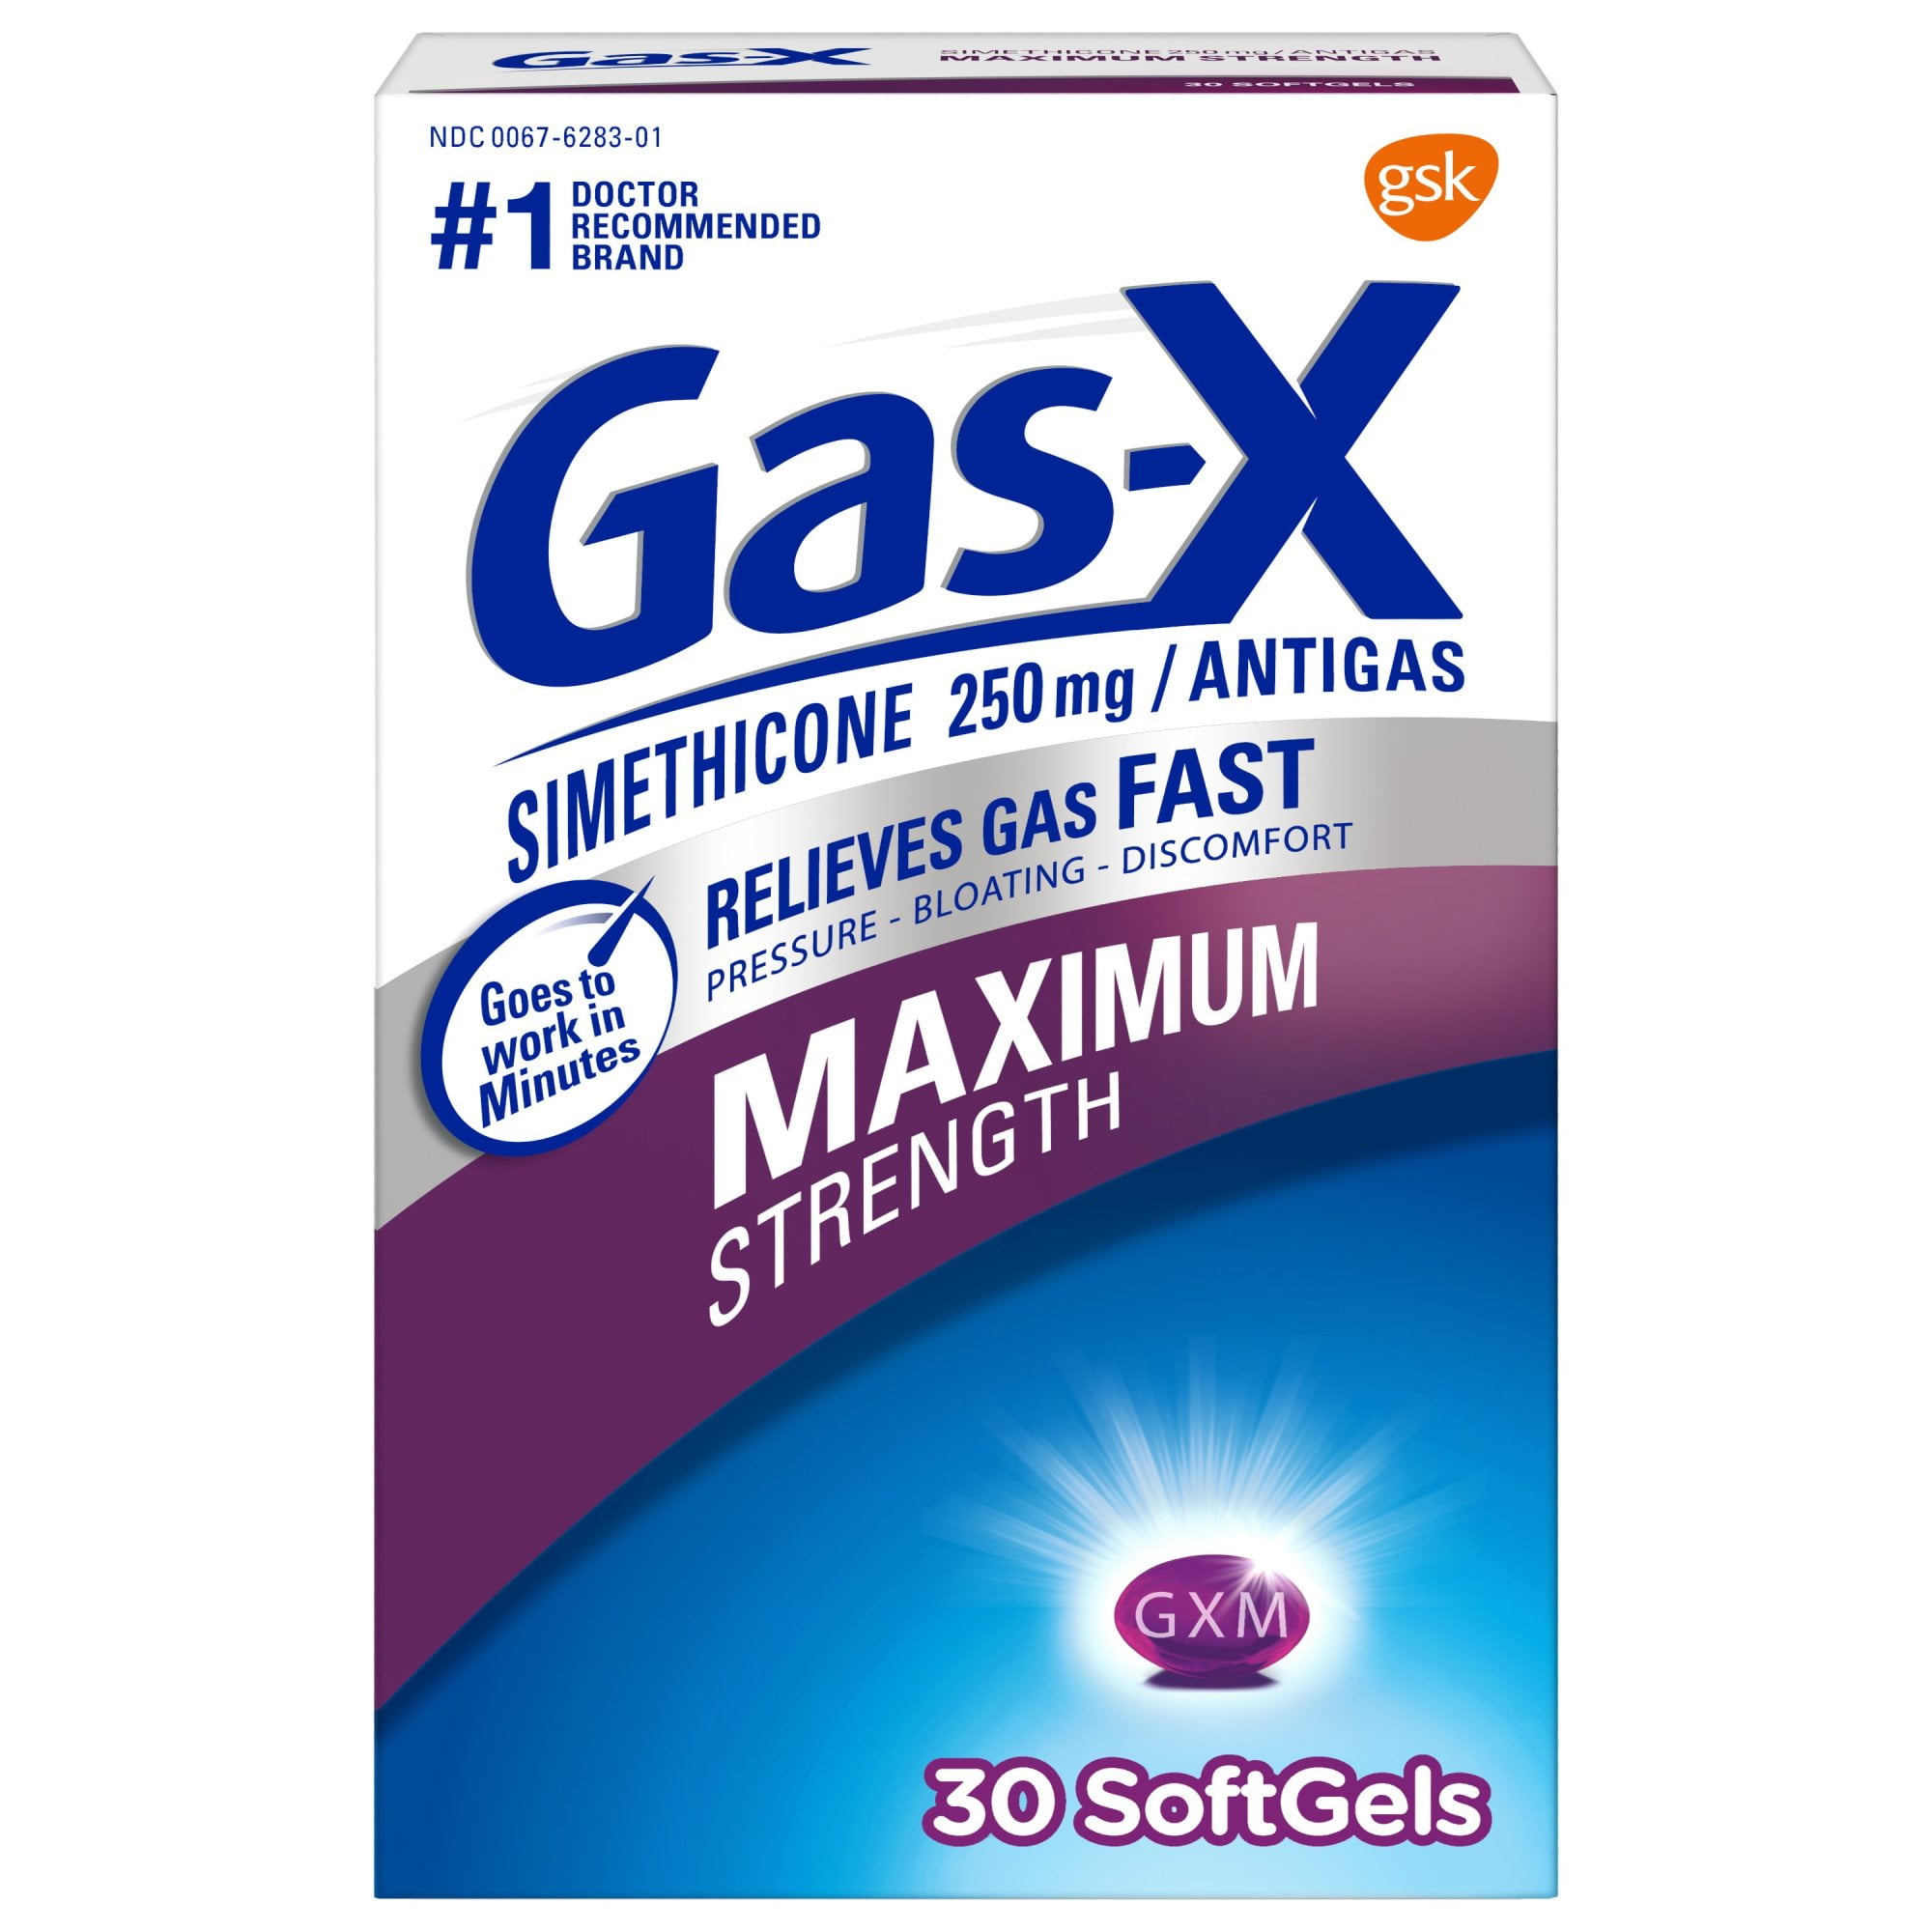 Gas-X-Maximum-Strength-Simethicone-Medic